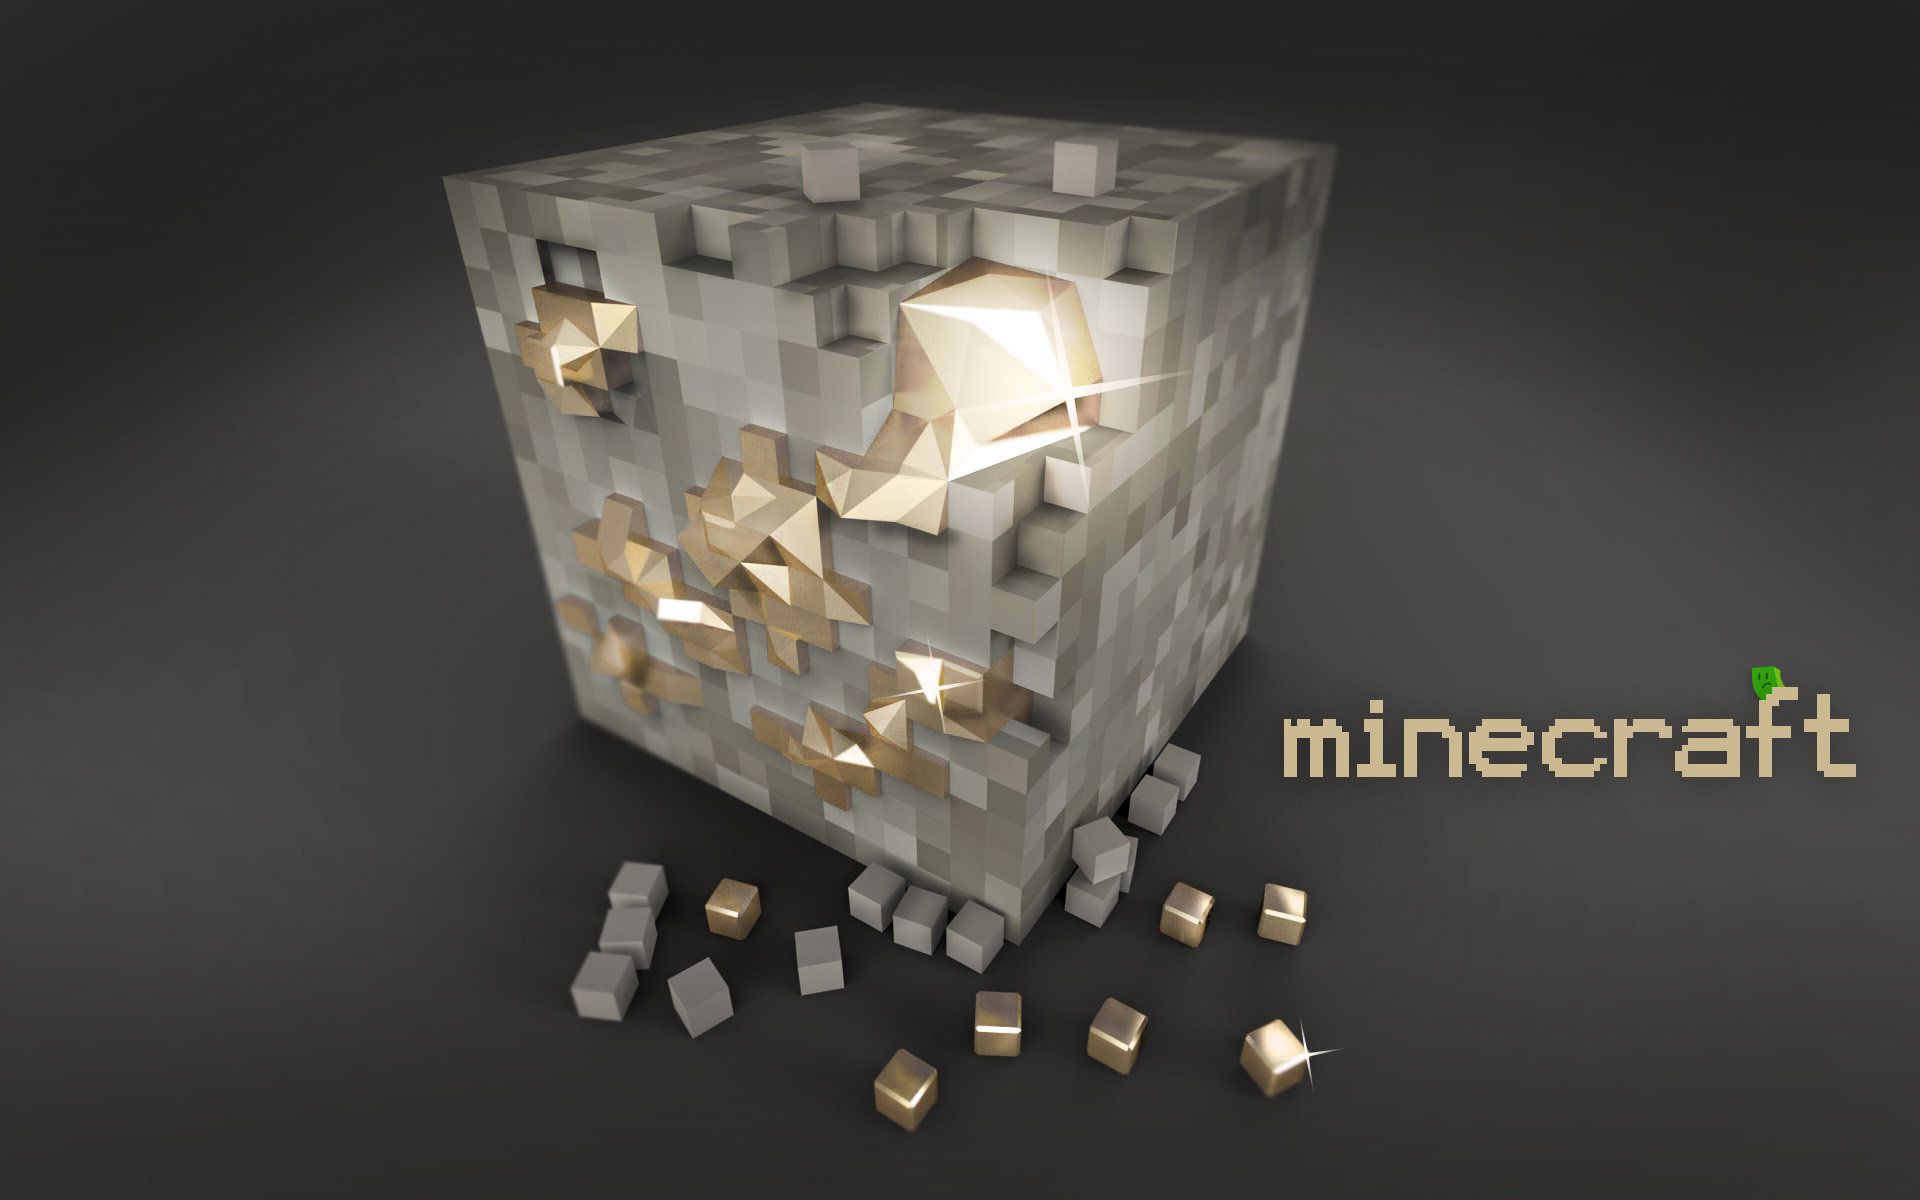 Minecraft HD Wallpaper | 1920x1080 | ID:53321